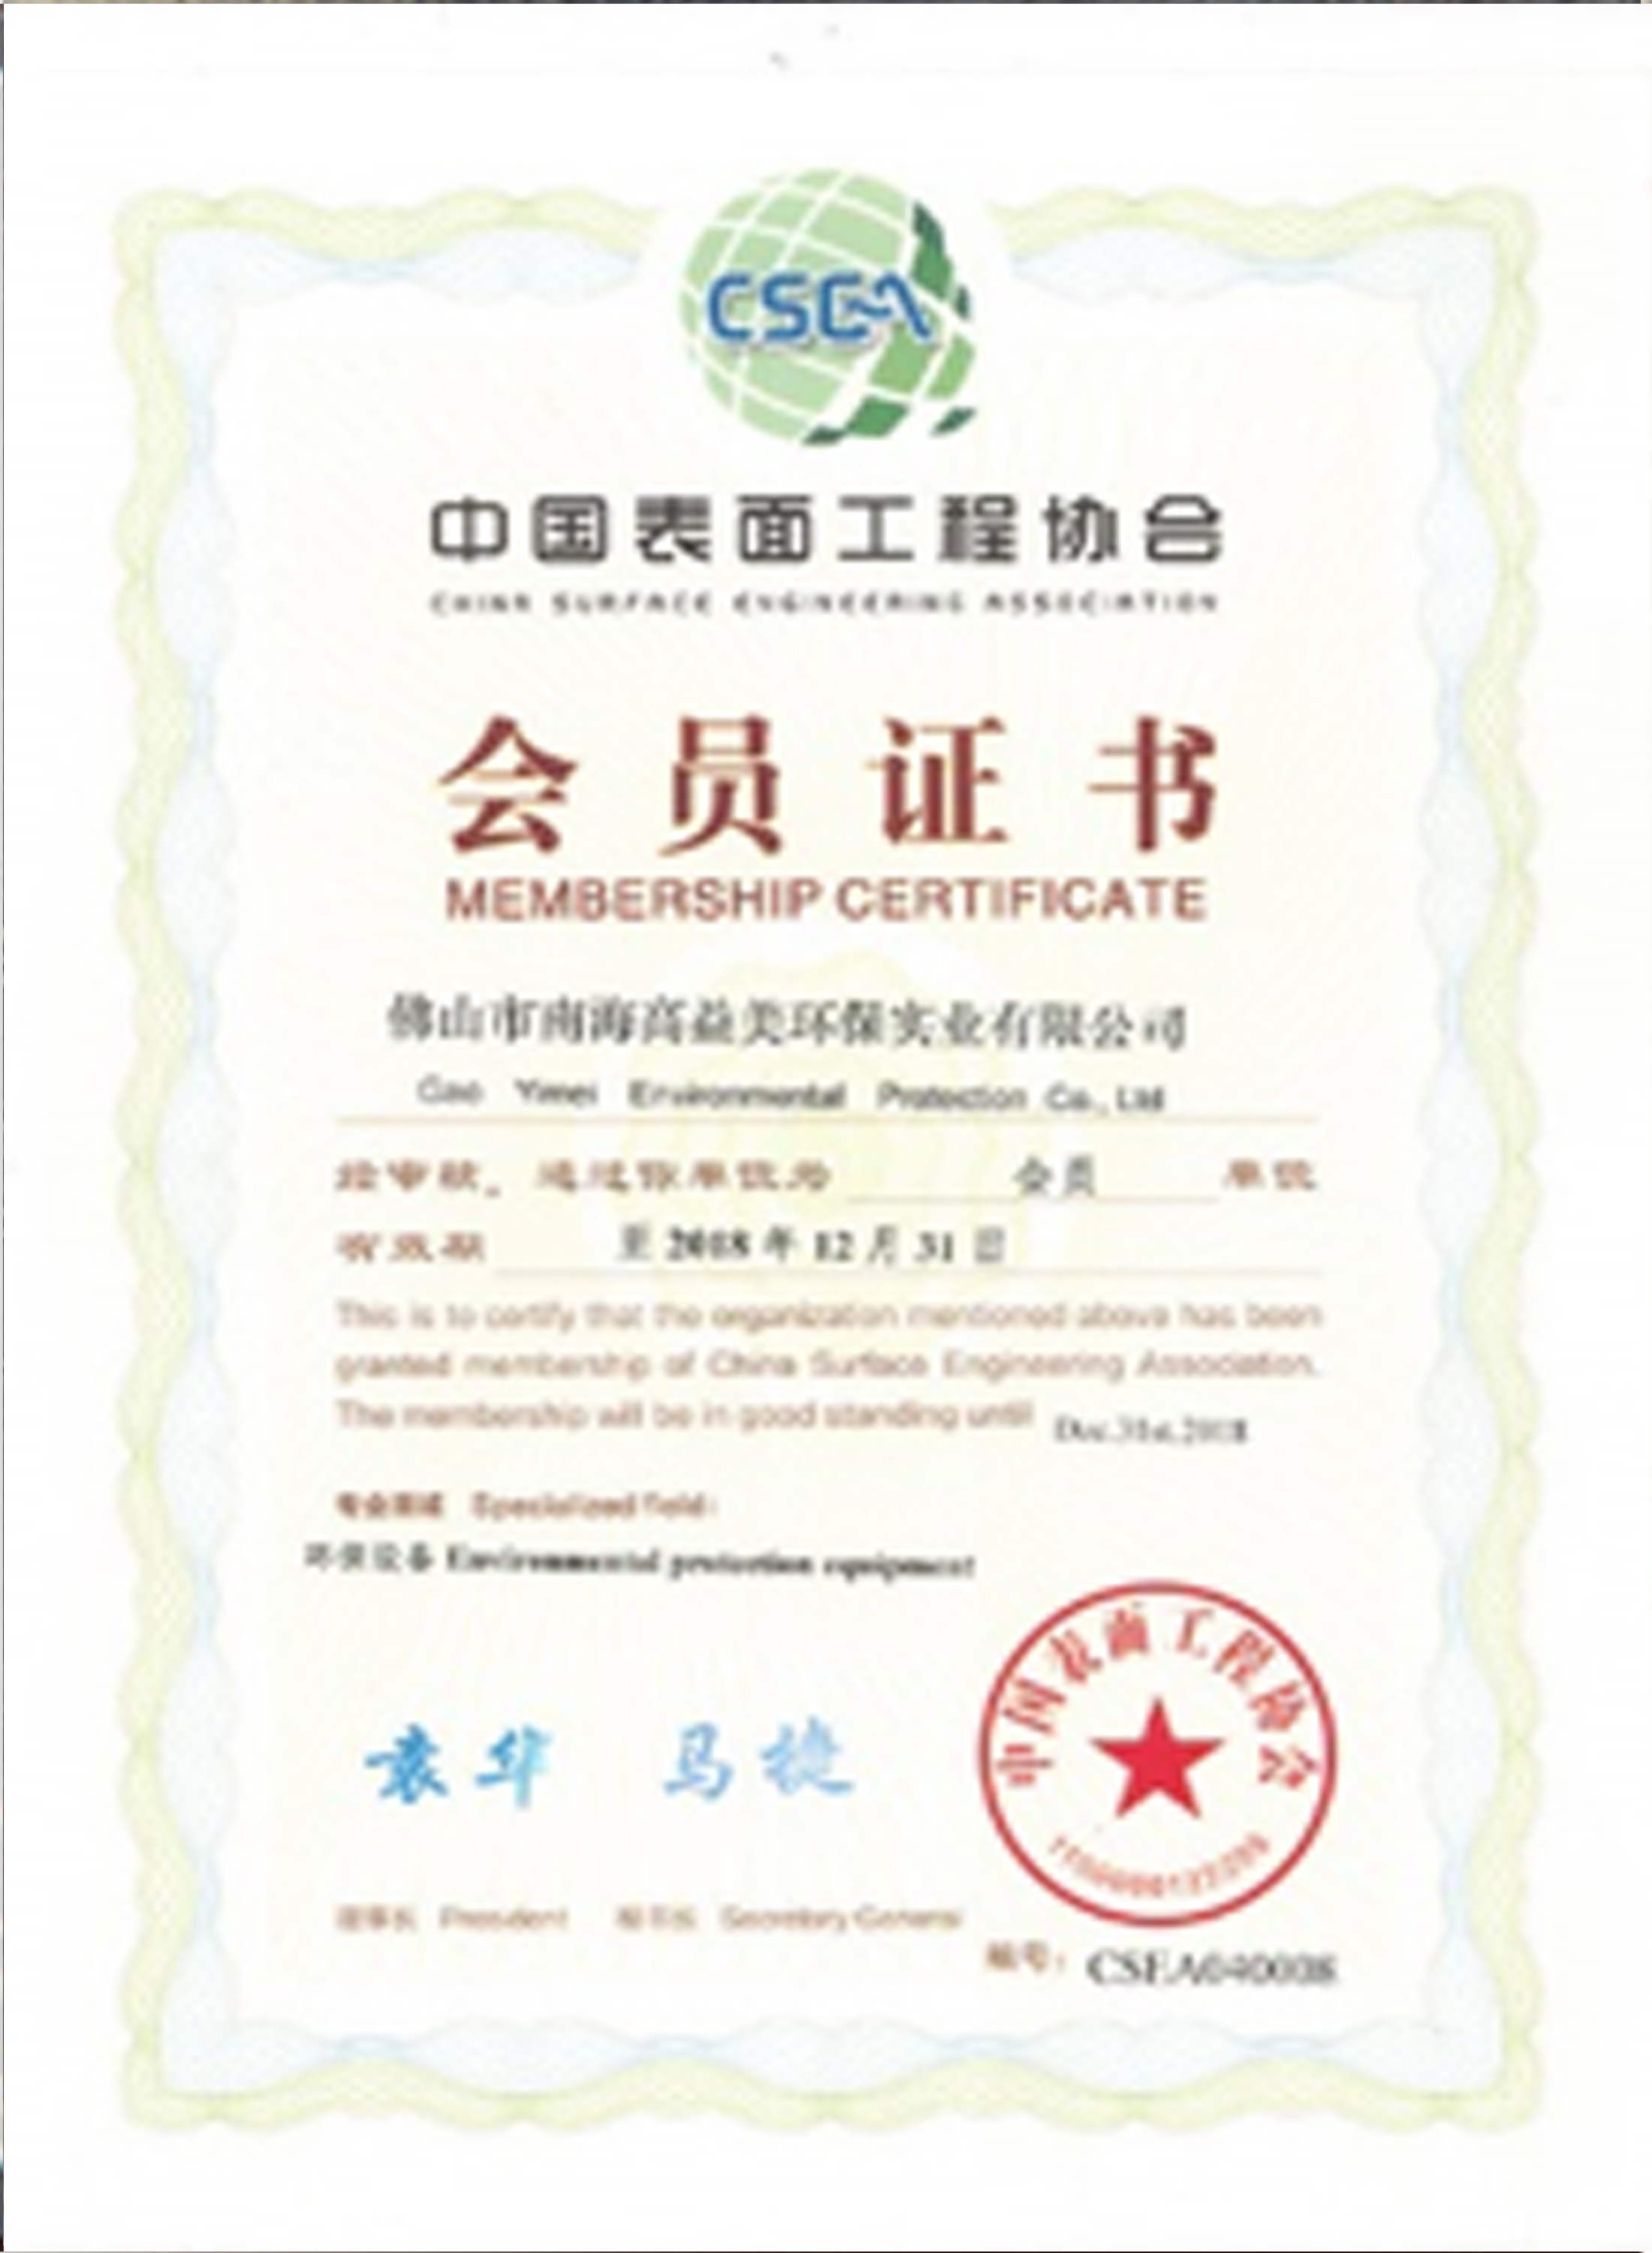 中国表面工程协会会员证书